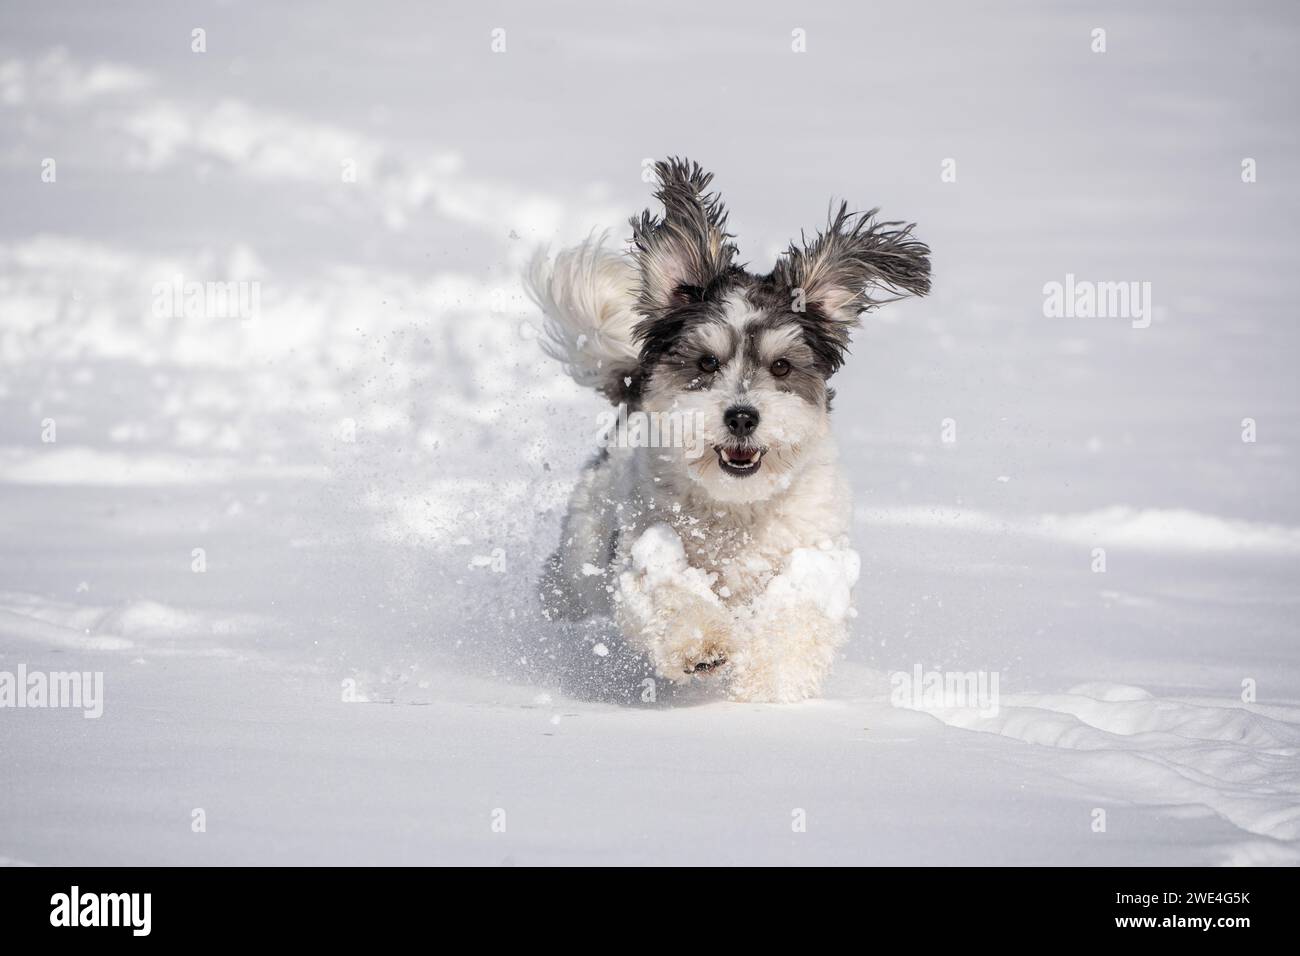 Adorable perro blanco y negro con orejas floppy corre en la nieve. Foto de stock